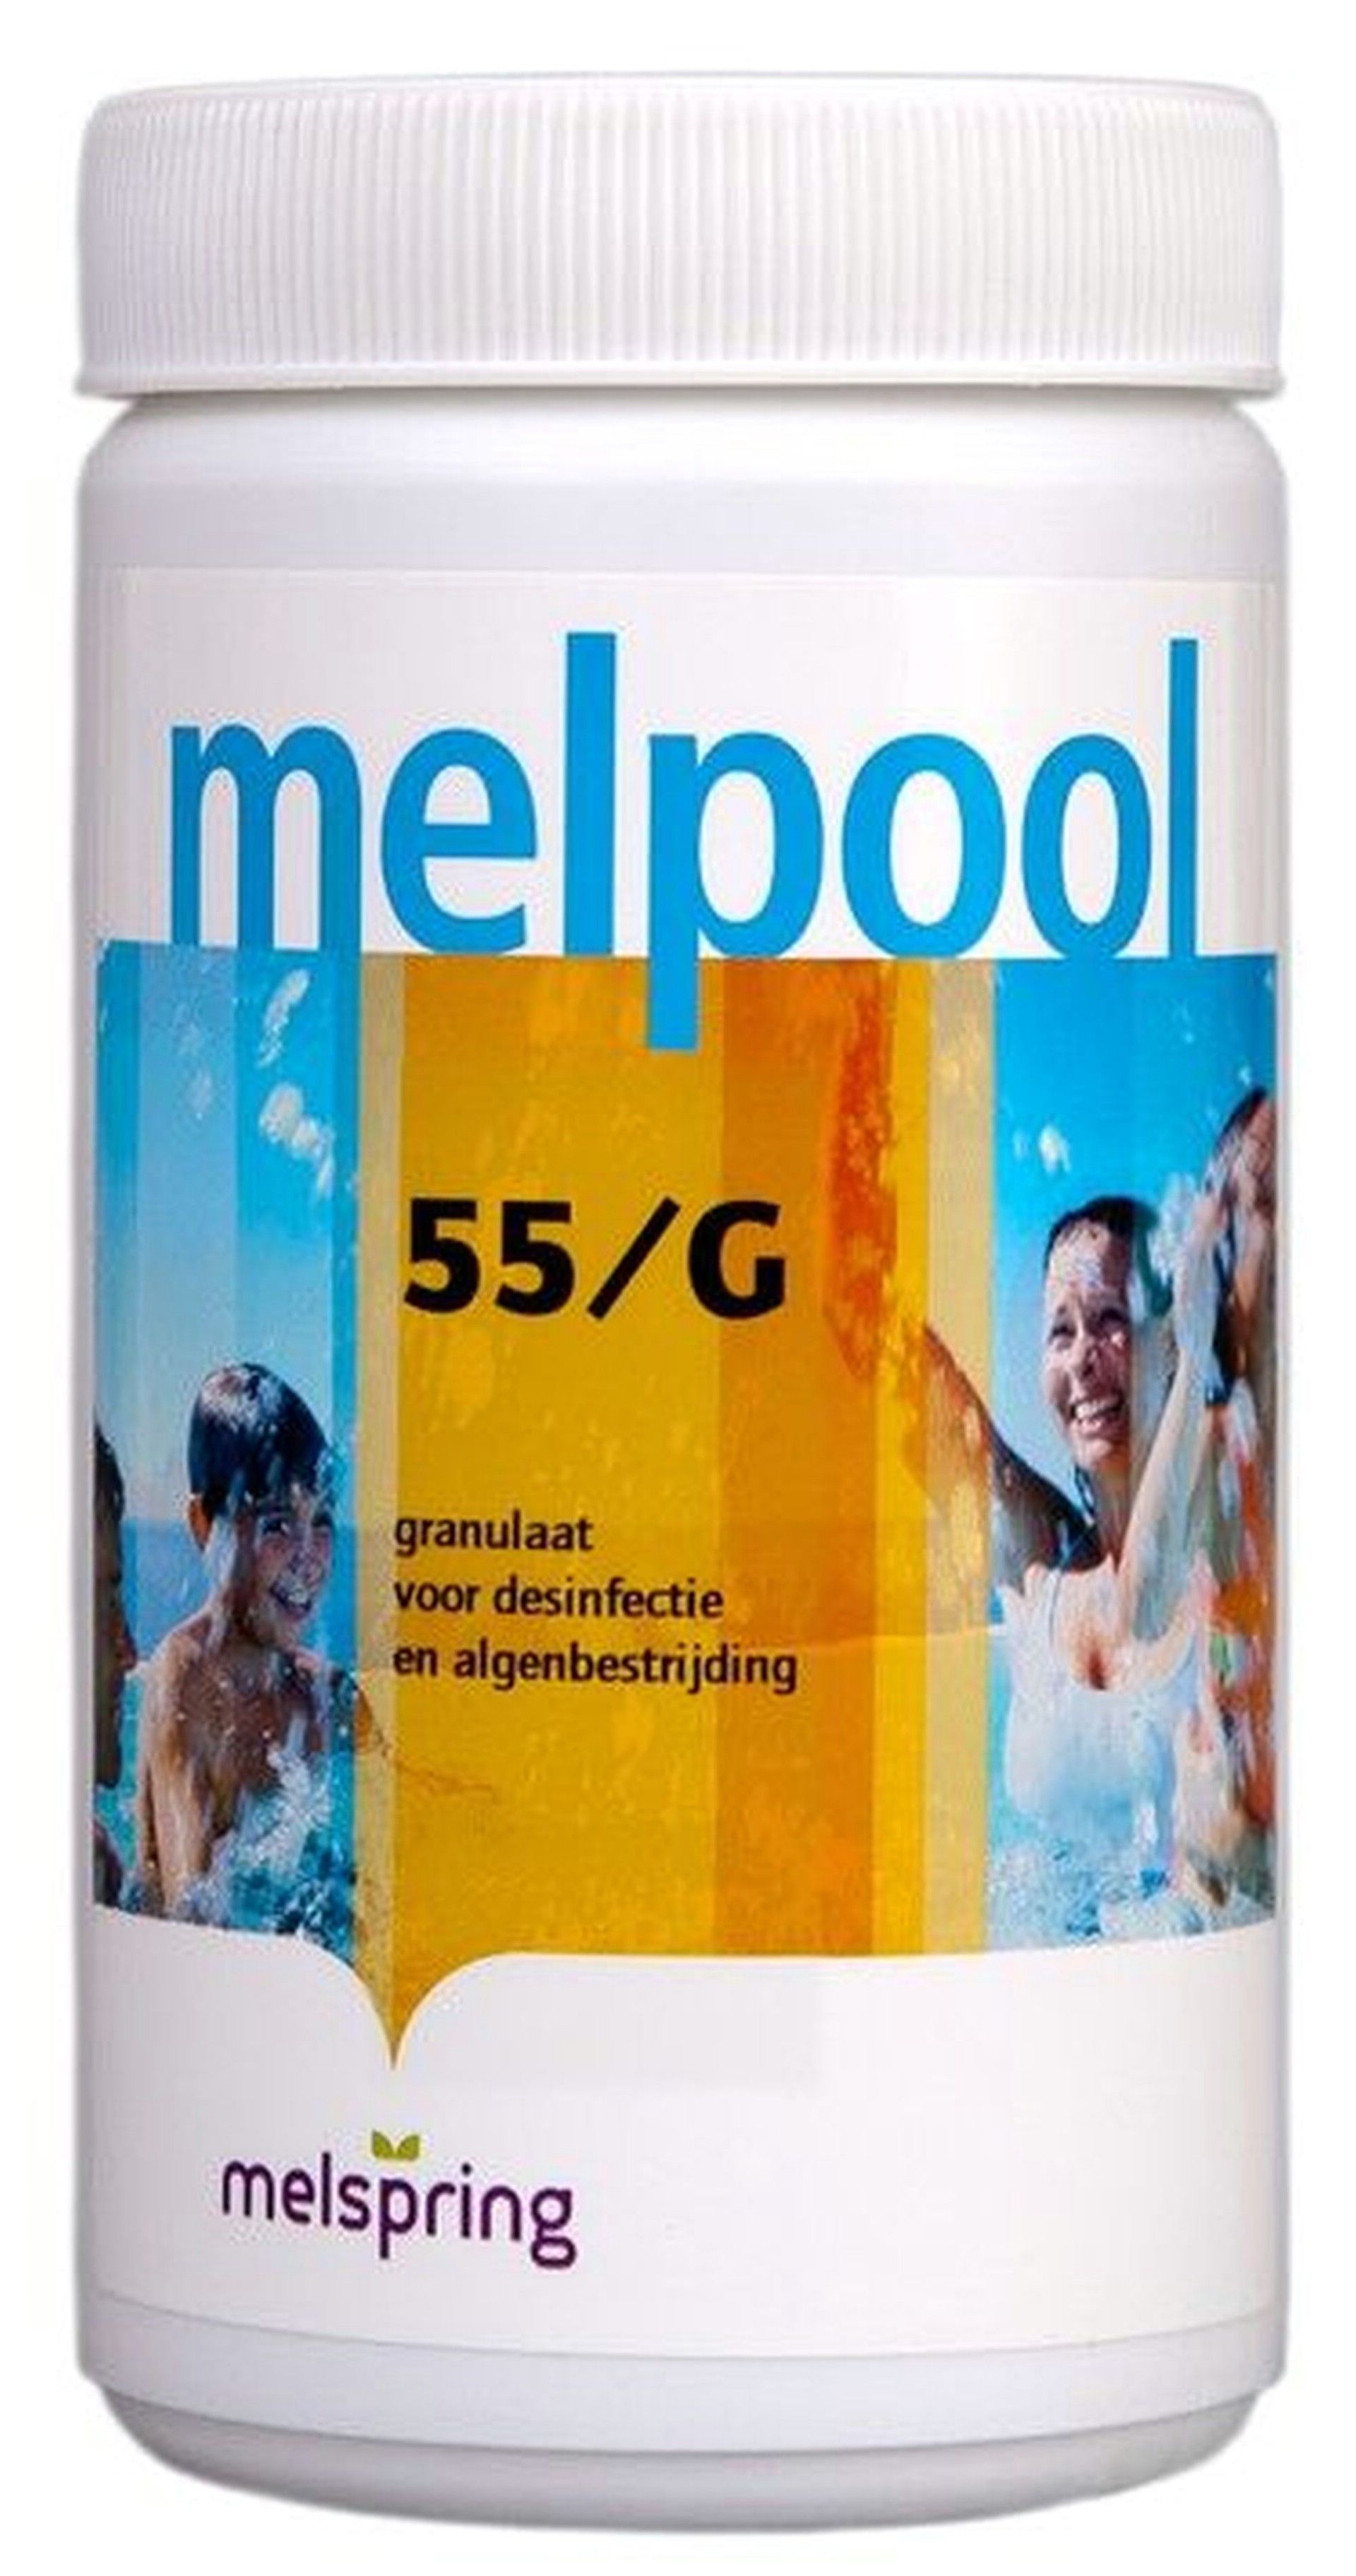 Foto van Melpool 55-G Chloorgranulaat 1 kg (Chloorshock)